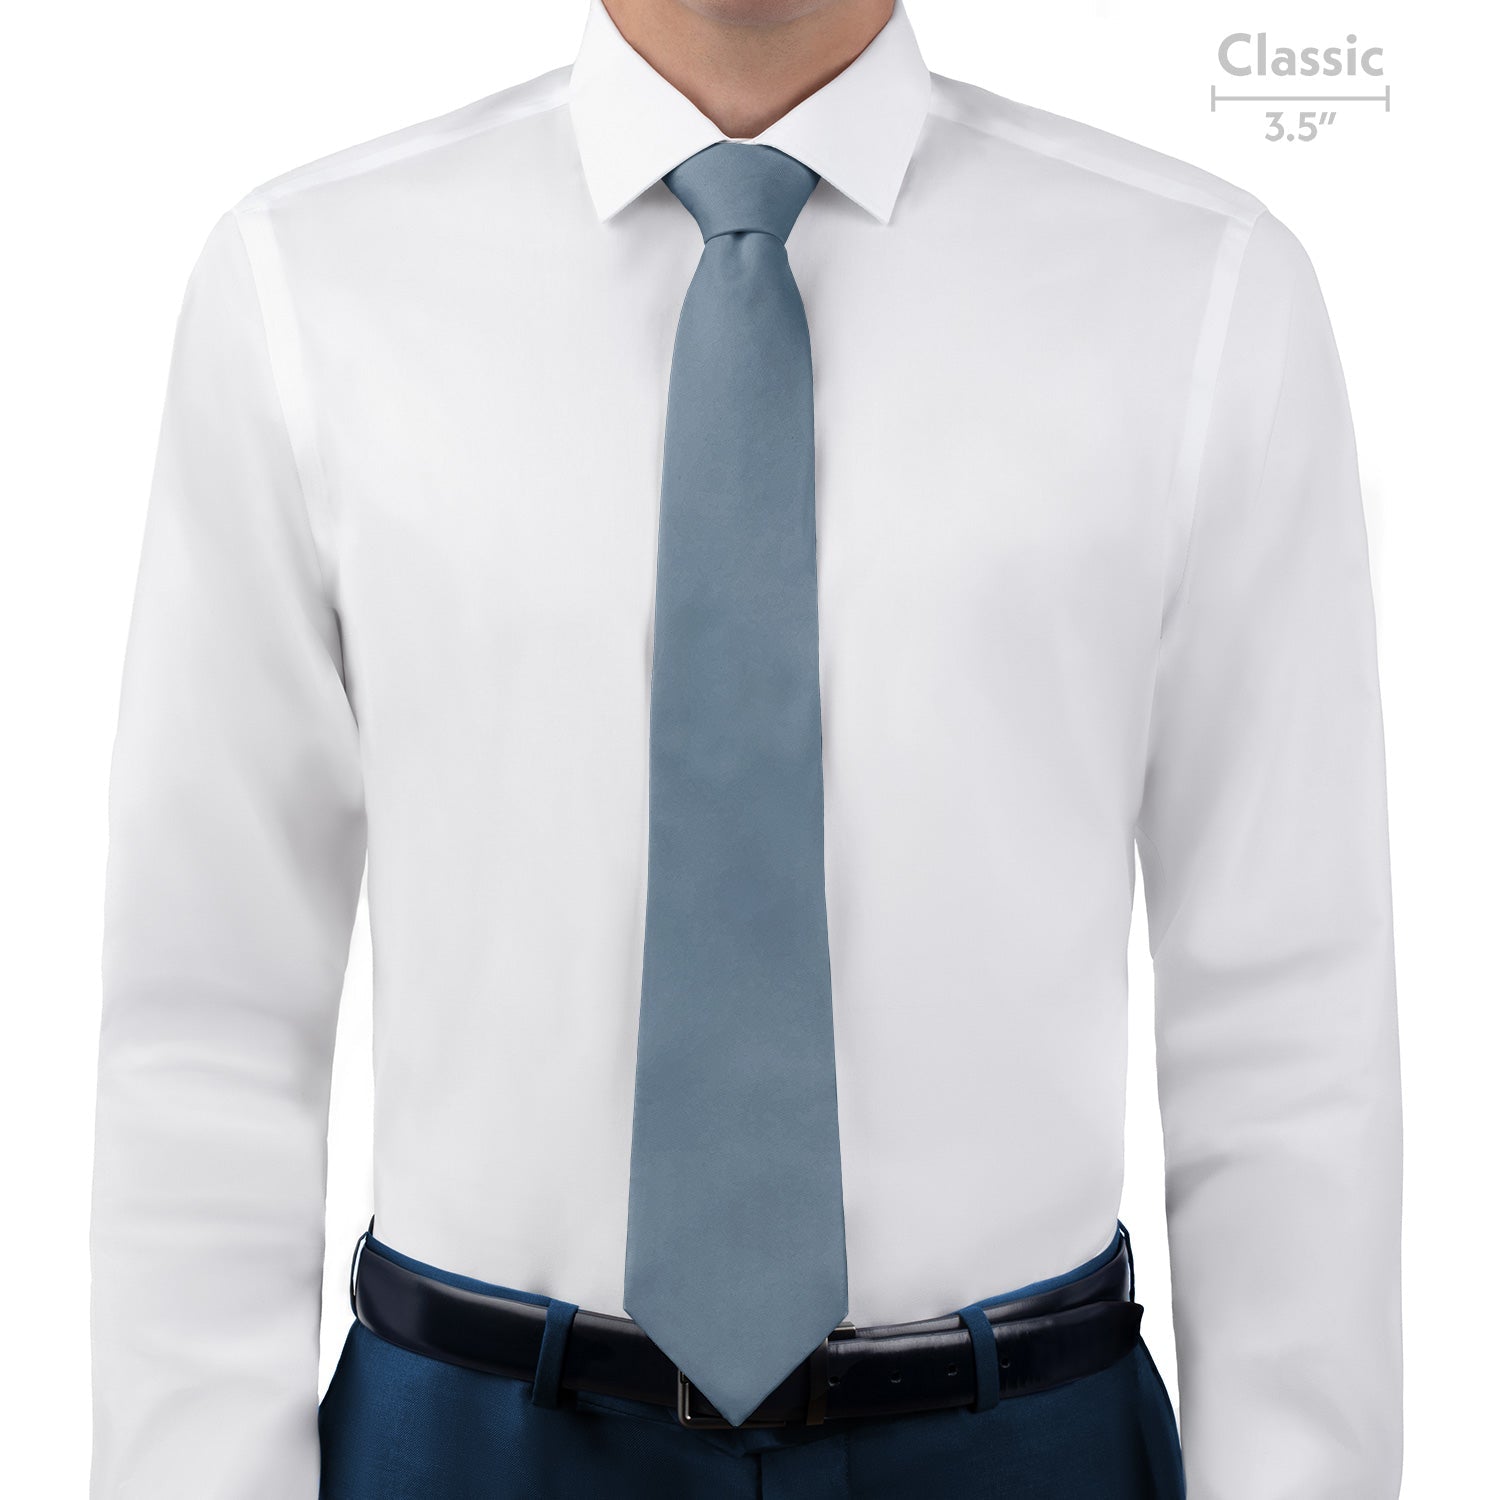 Azazie Dusty Blue Necktie - Classic - Knotty Tie Co.